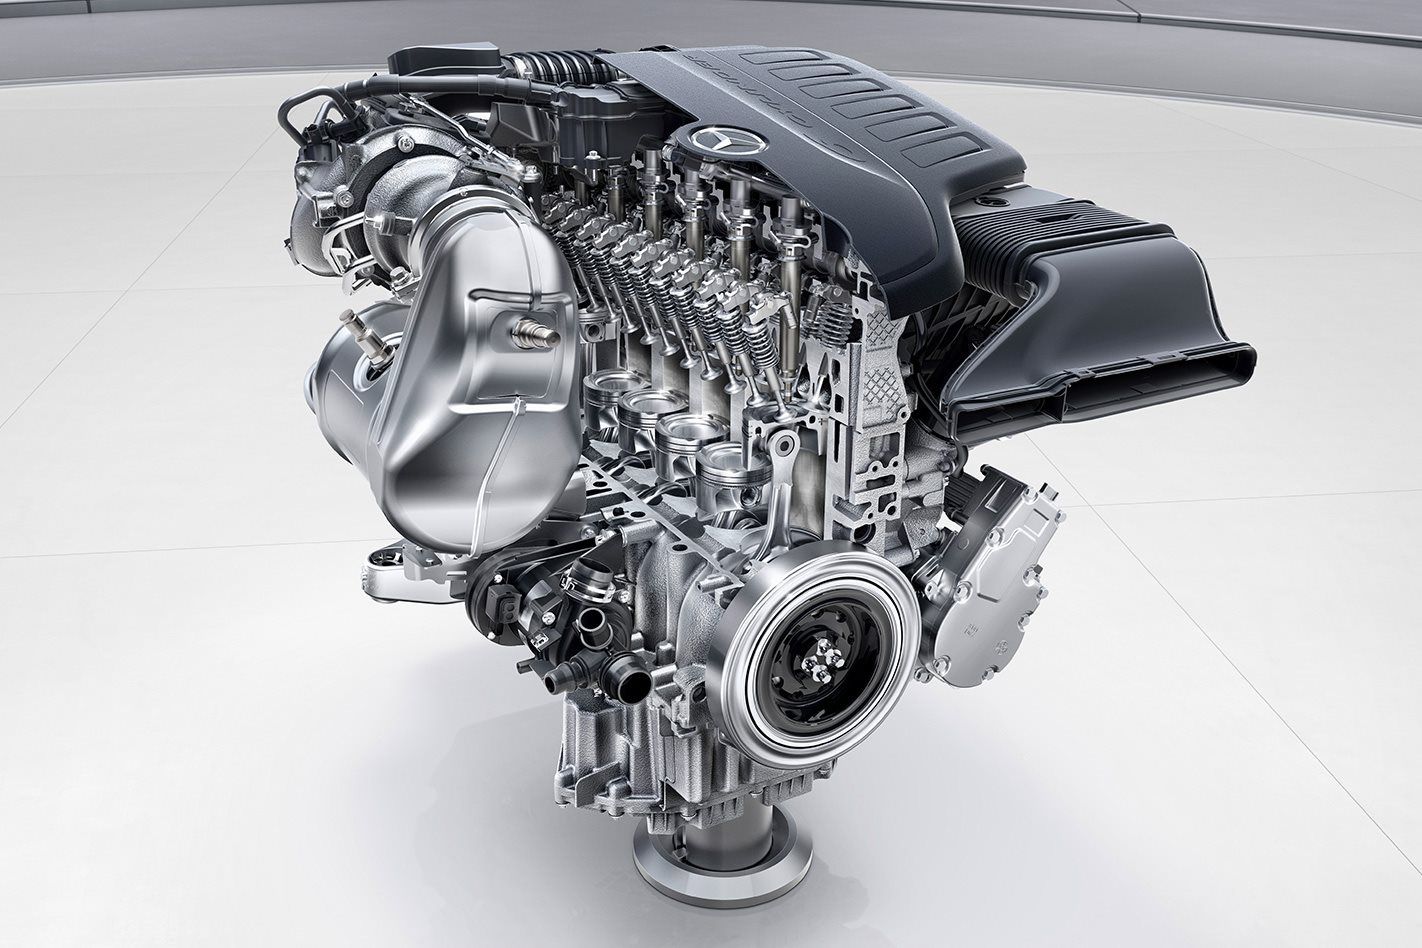 V6 Engine- V6 and V8 Engines Take Up The Same Space